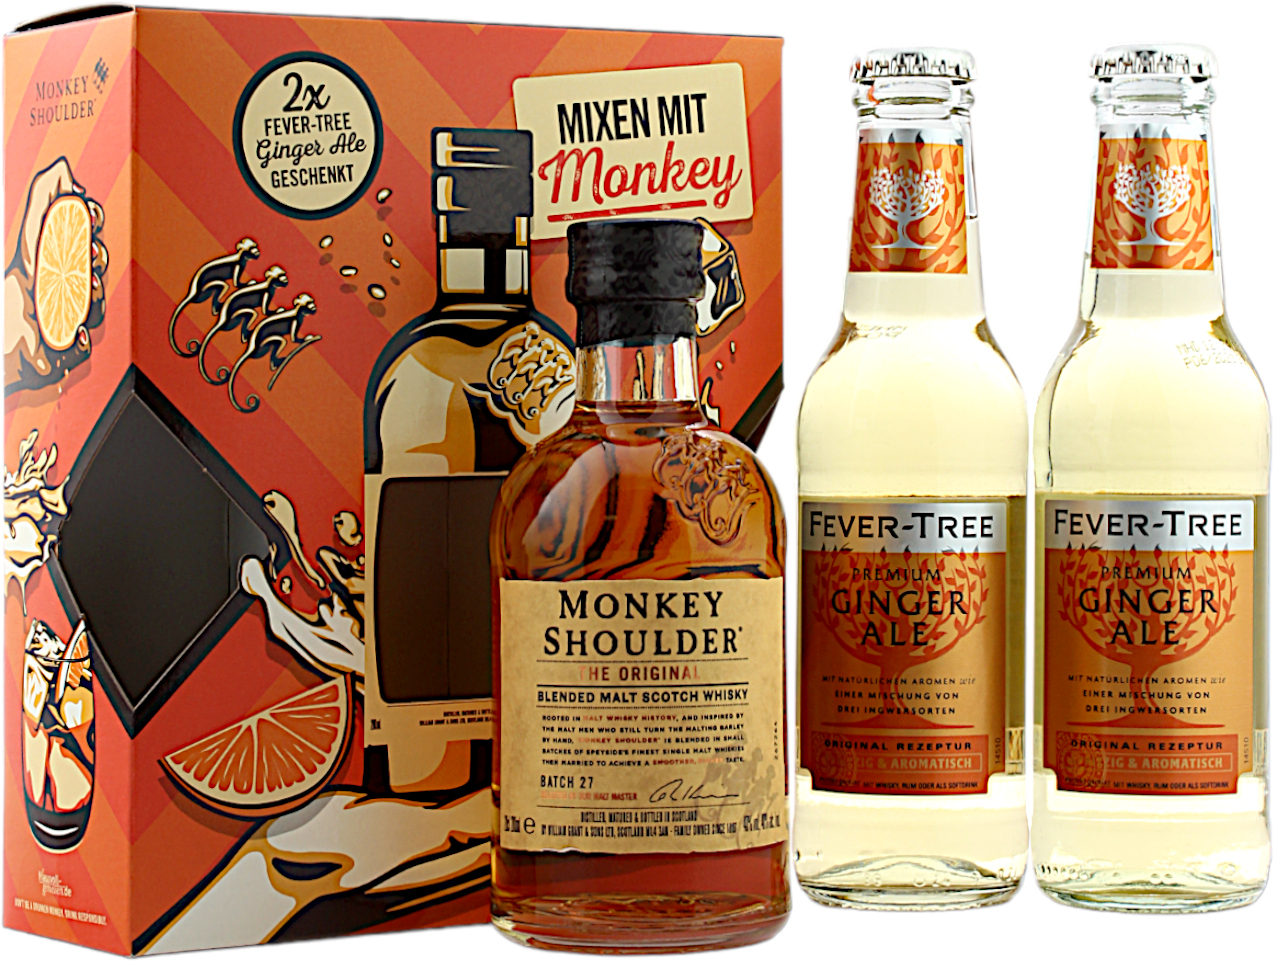 Monkey Shoulder - Fever Tree Ginger Monkey Gift Pack Whisky